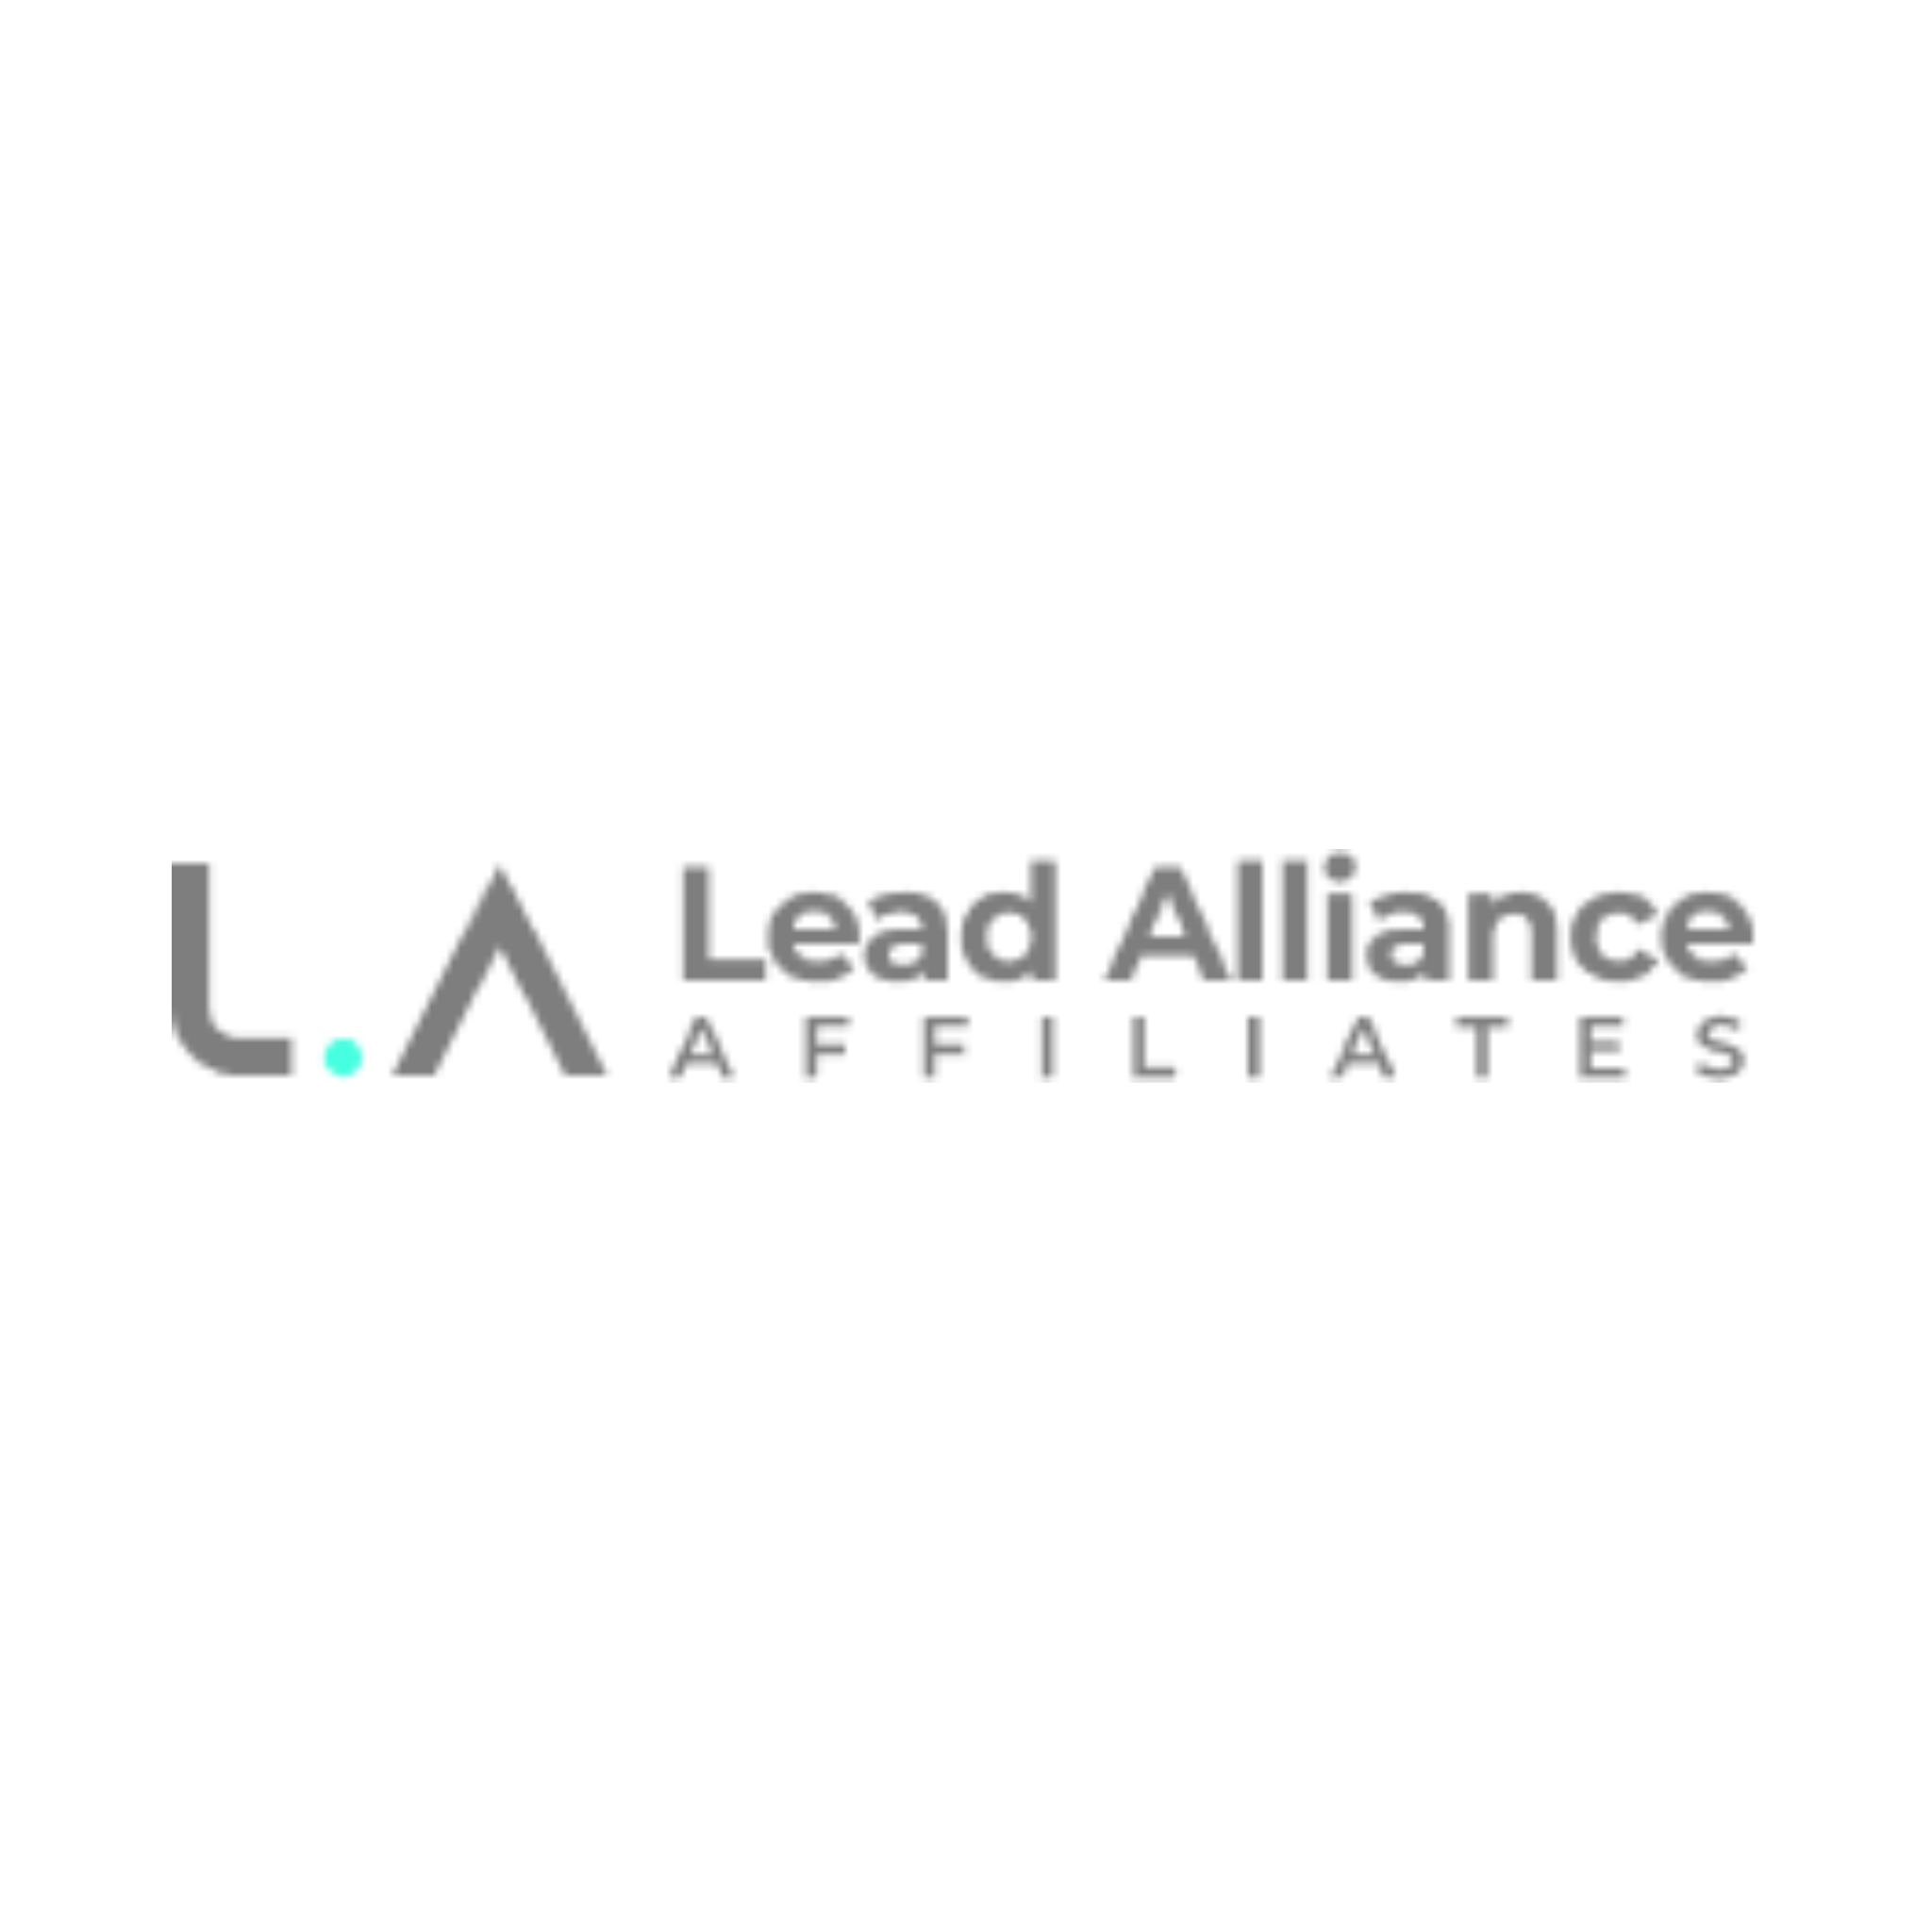 Lead Alliance Affiliates